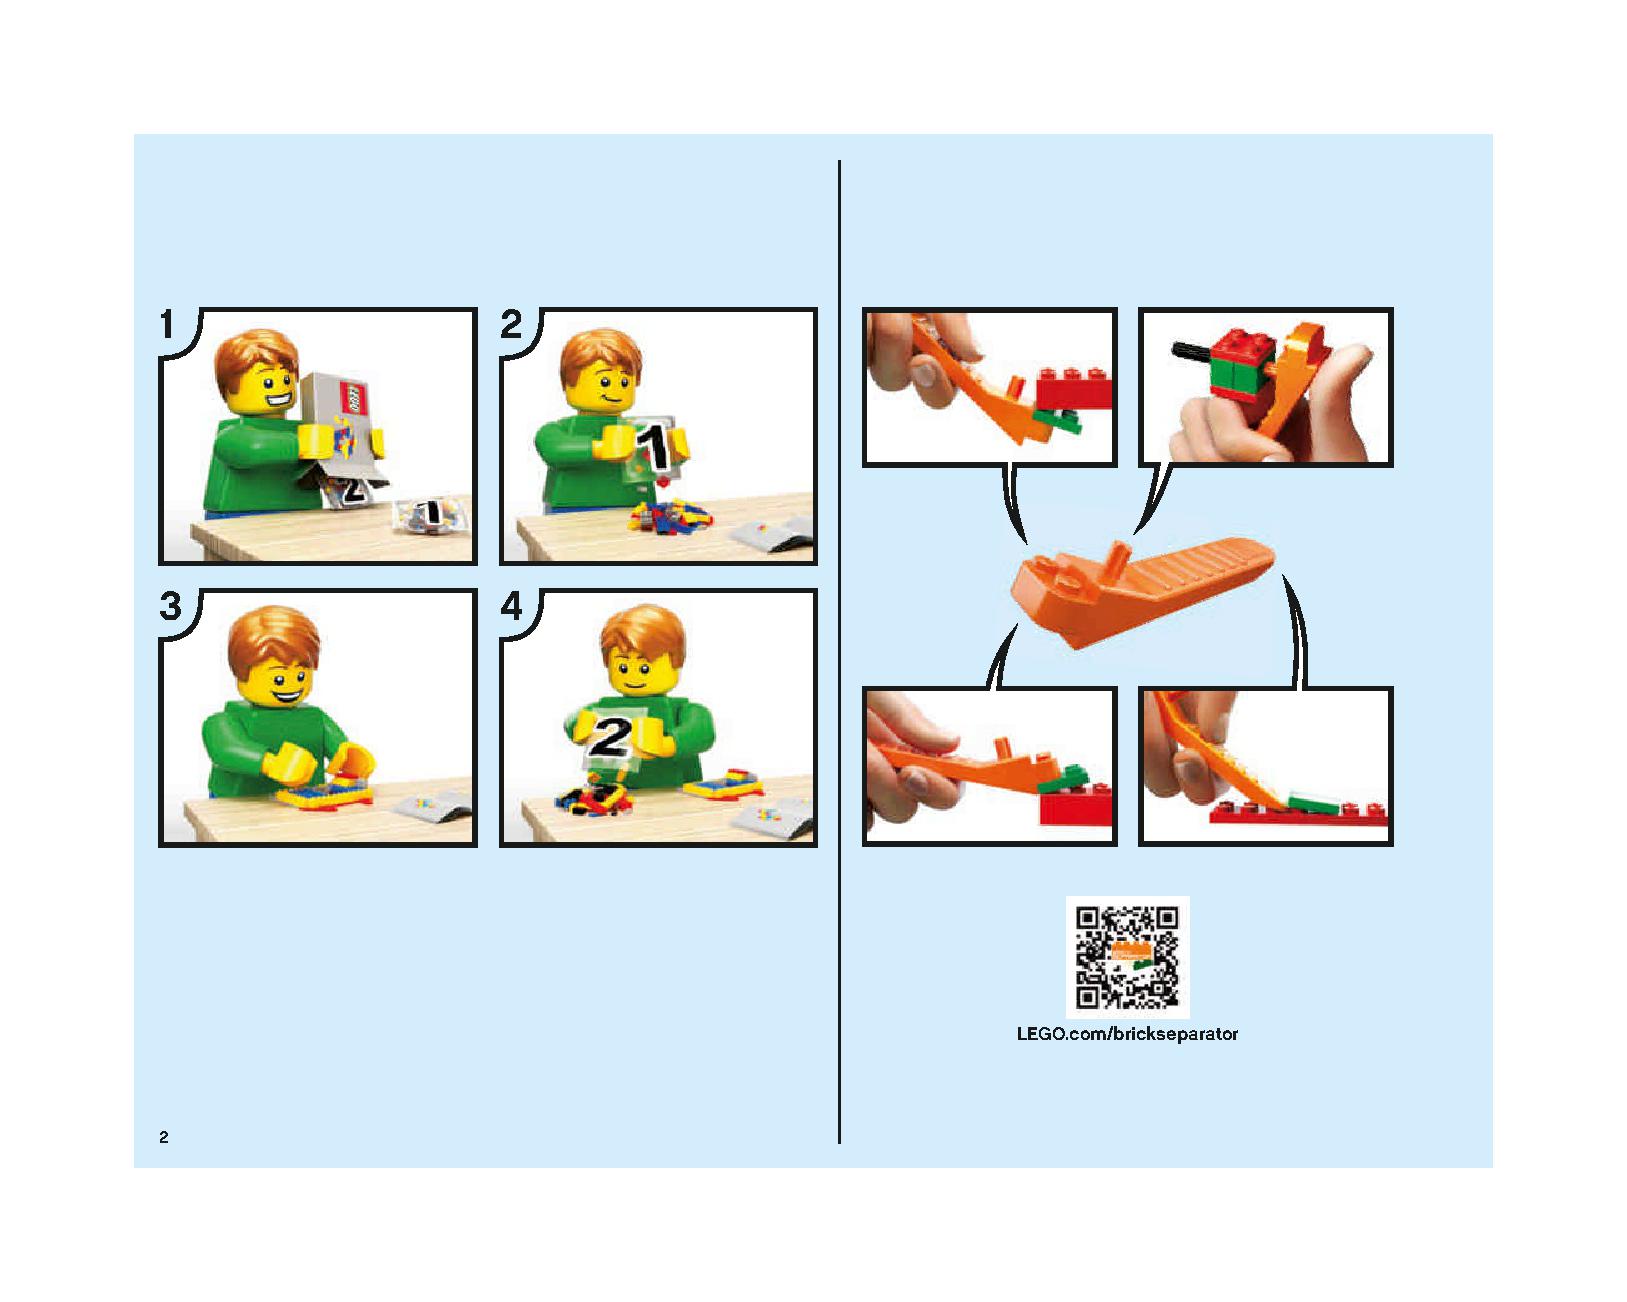 ホグワーツの大広間 75954 レゴの商品情報 レゴの説明書・組立方法 2 page